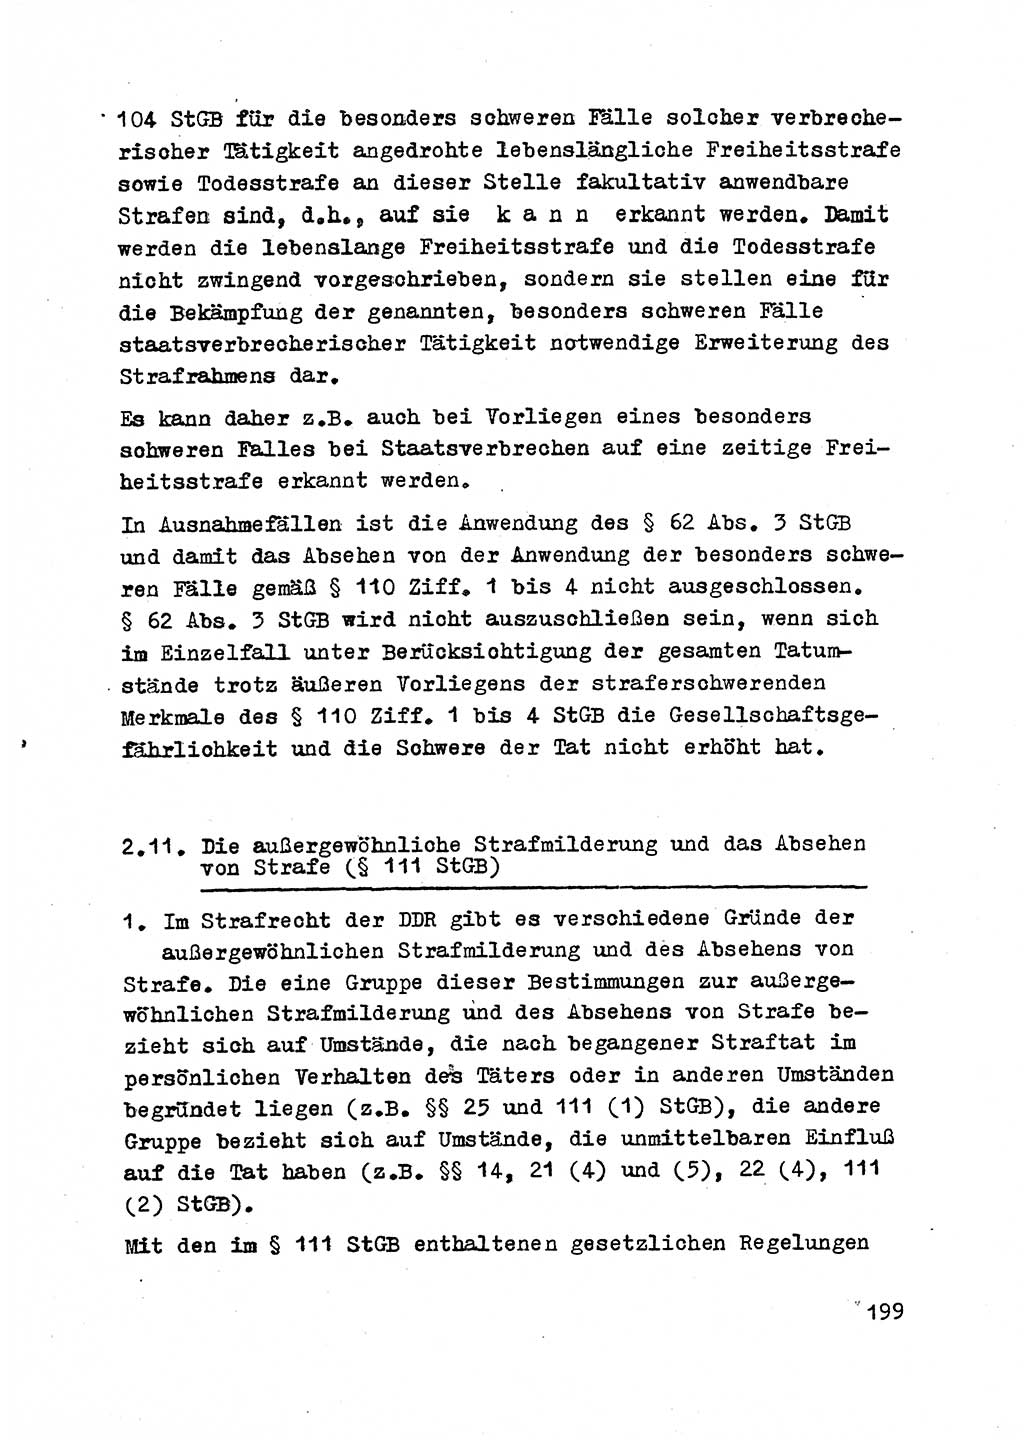 Strafrecht der DDR (Deutsche Demokratische Republik), Besonderer Teil, Lehrmaterial, Heft 2 1969, Seite 199 (Strafr. DDR BT Lehrmat. H. 2 1969, S. 199)